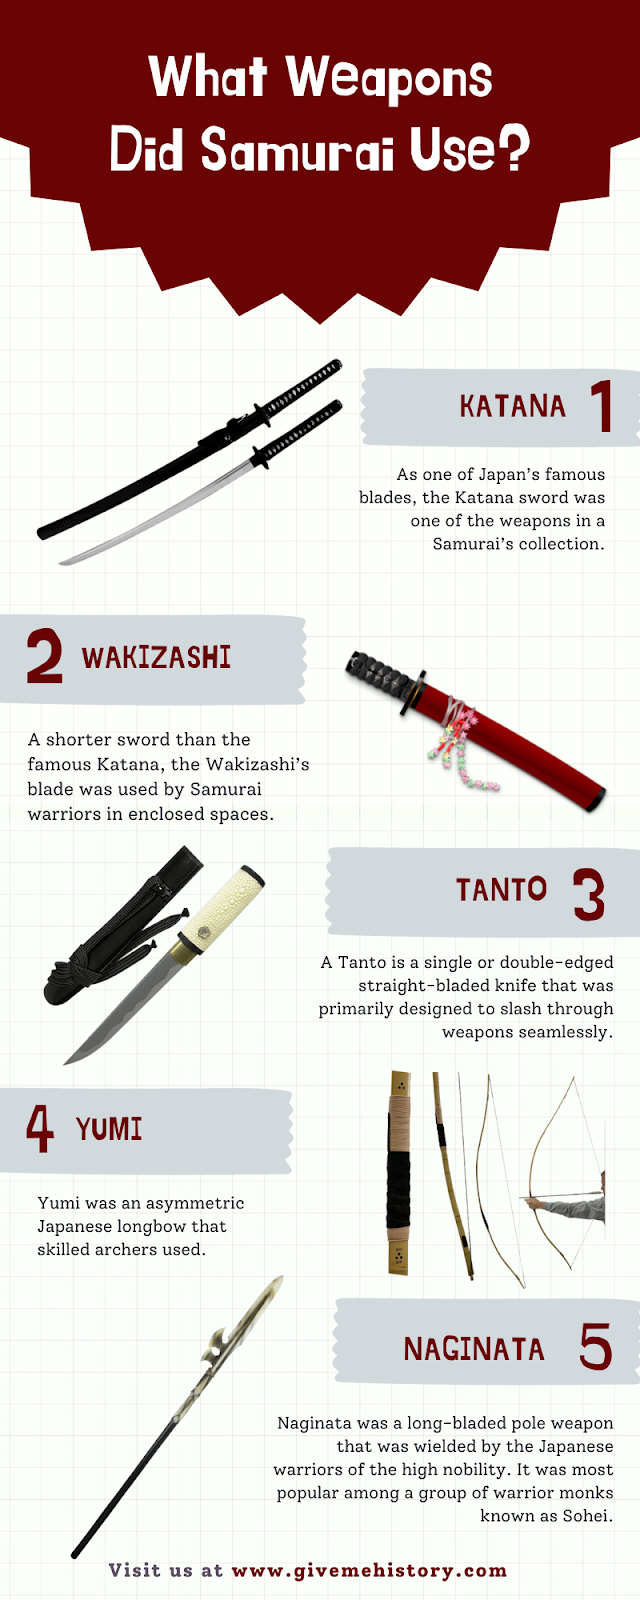 Samurai đã sử dụng vũ khí gì?